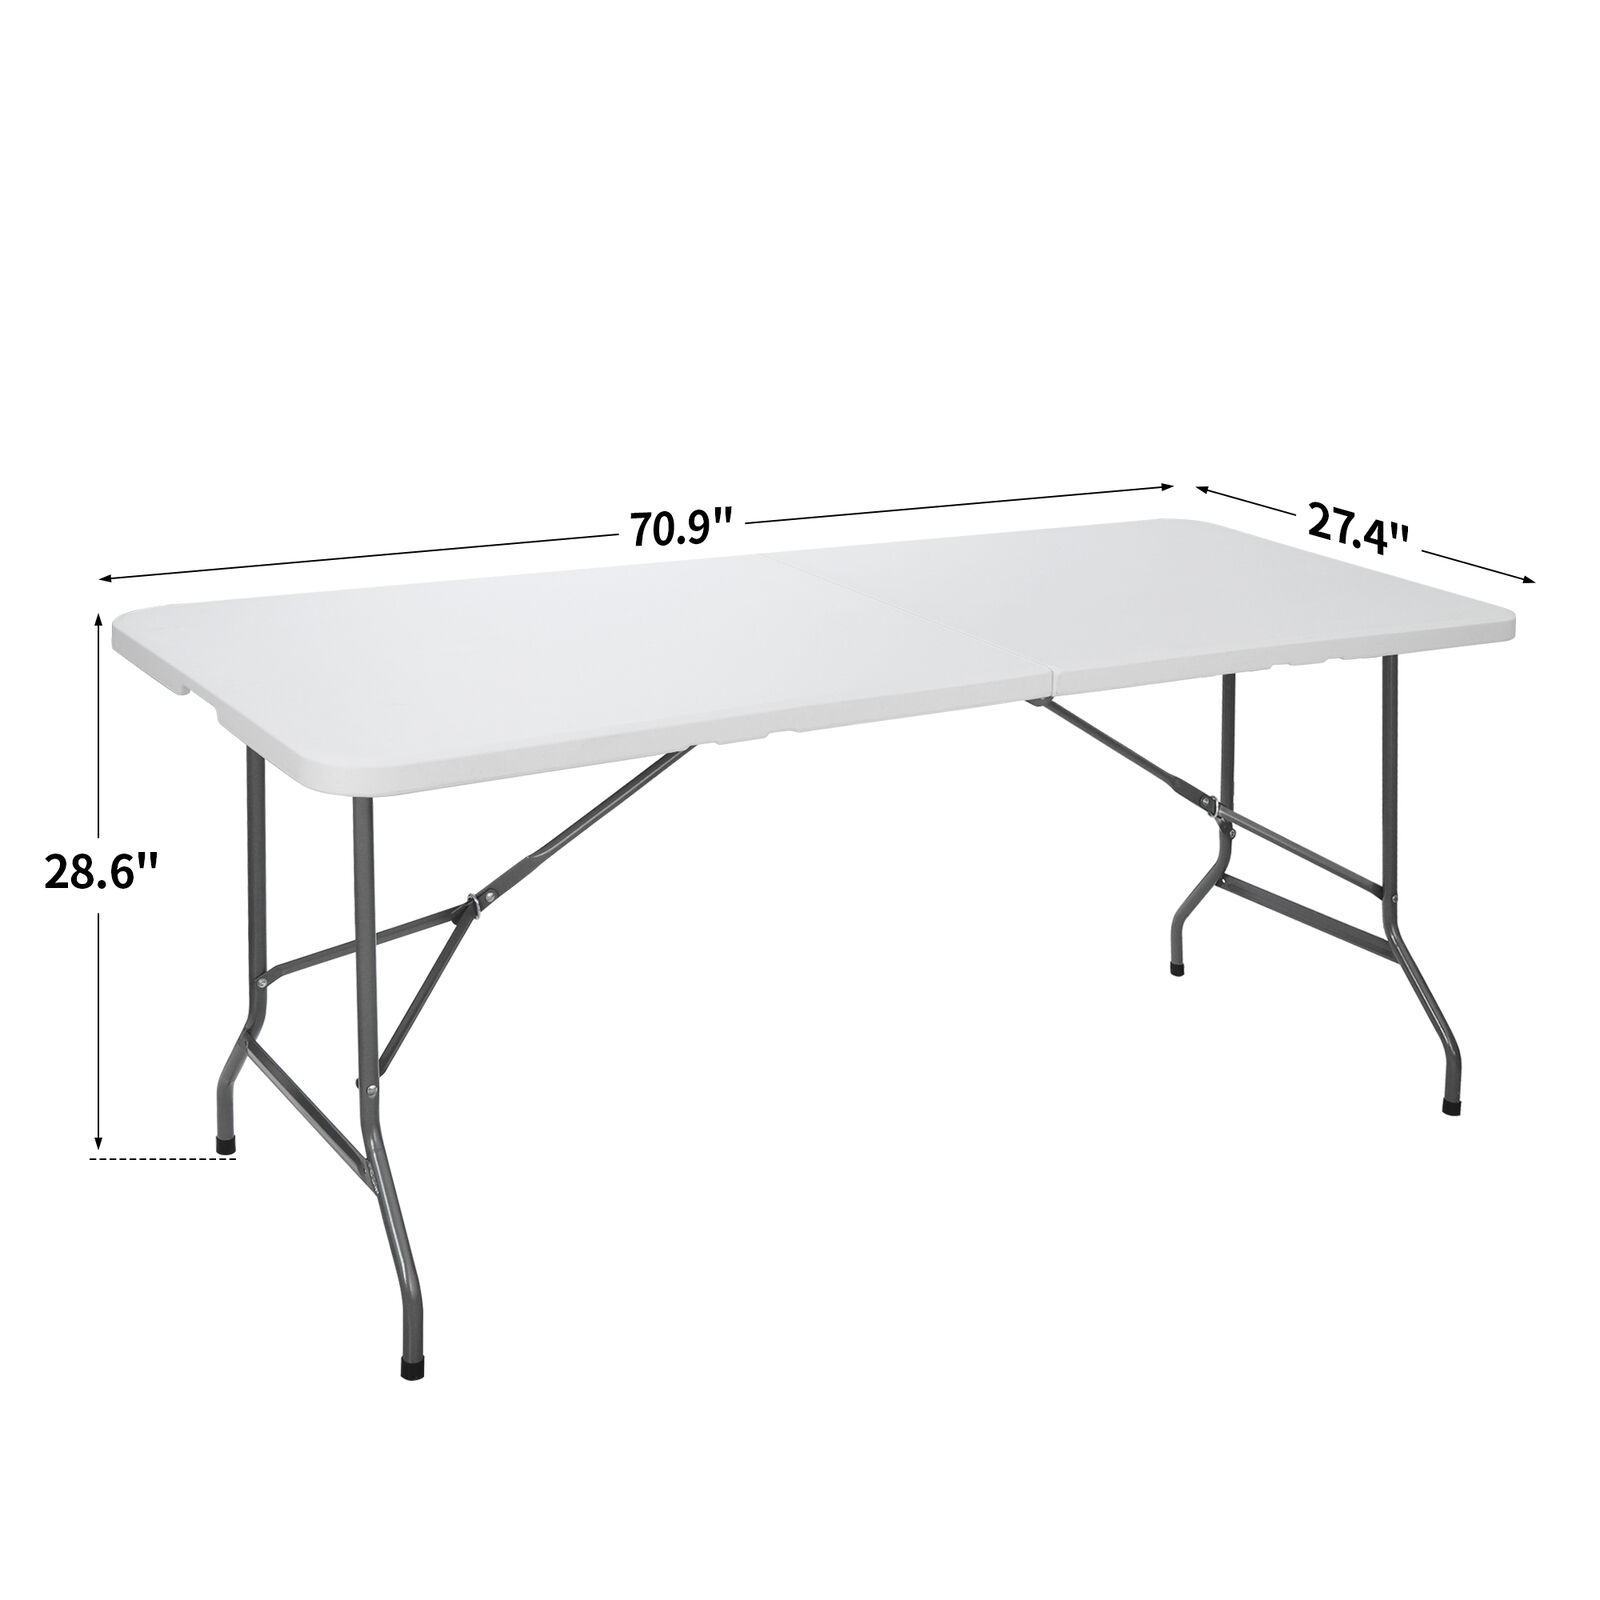 6/8' Portable Folding Table Plastic Picnic Party Camp Dining White 1PCS/2PC/4PCS